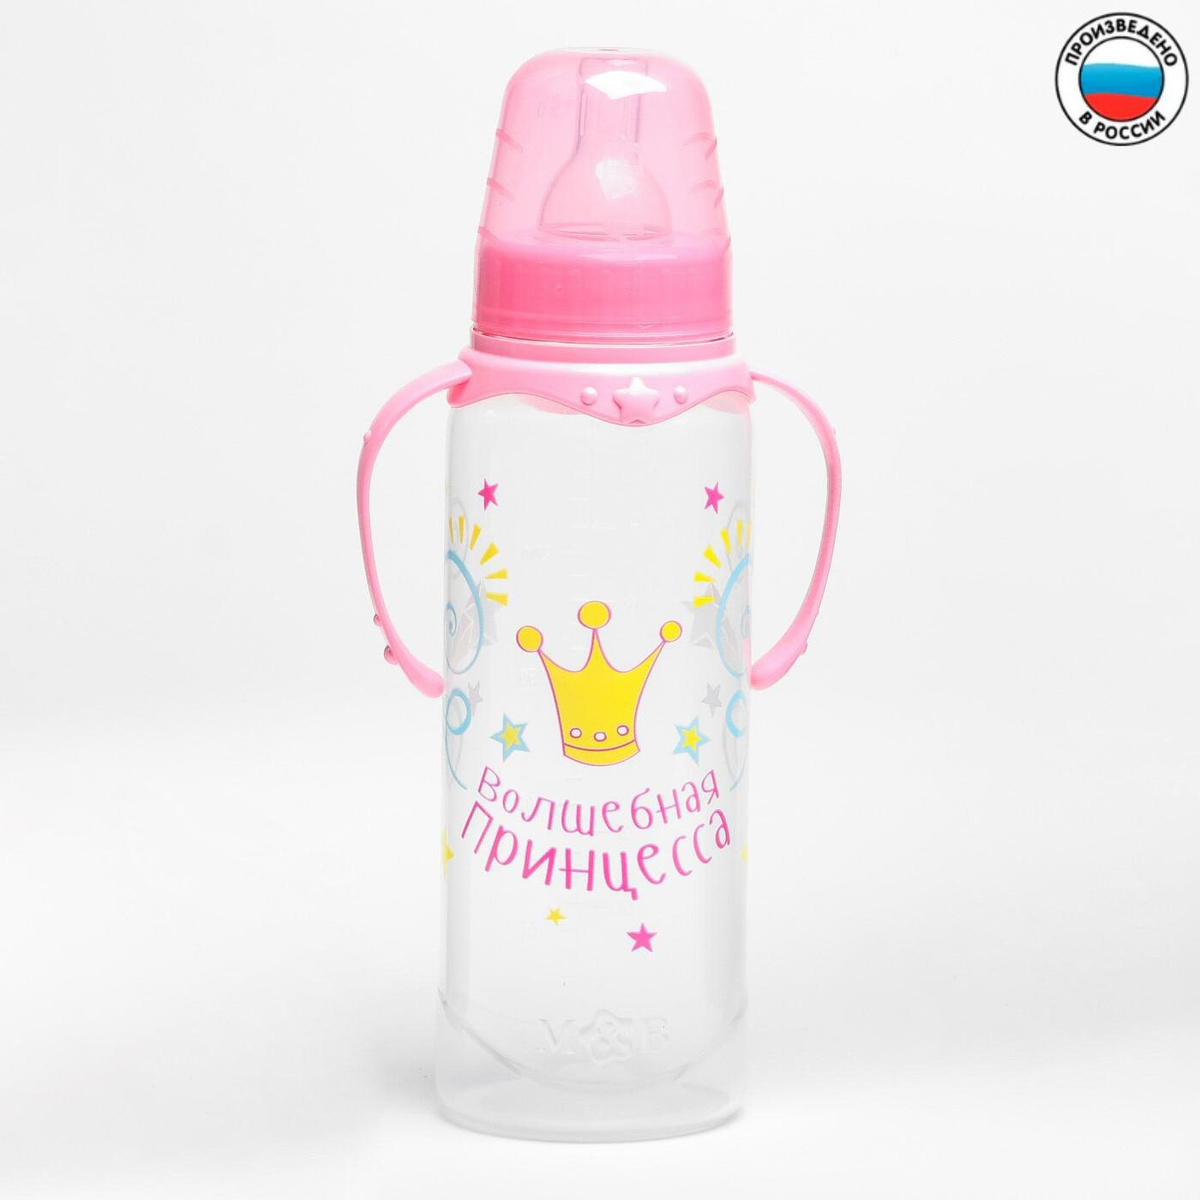 Бутылочка 2969814 Принцесса 250мл с ручками цвет: розовый - Нижний Новгород 